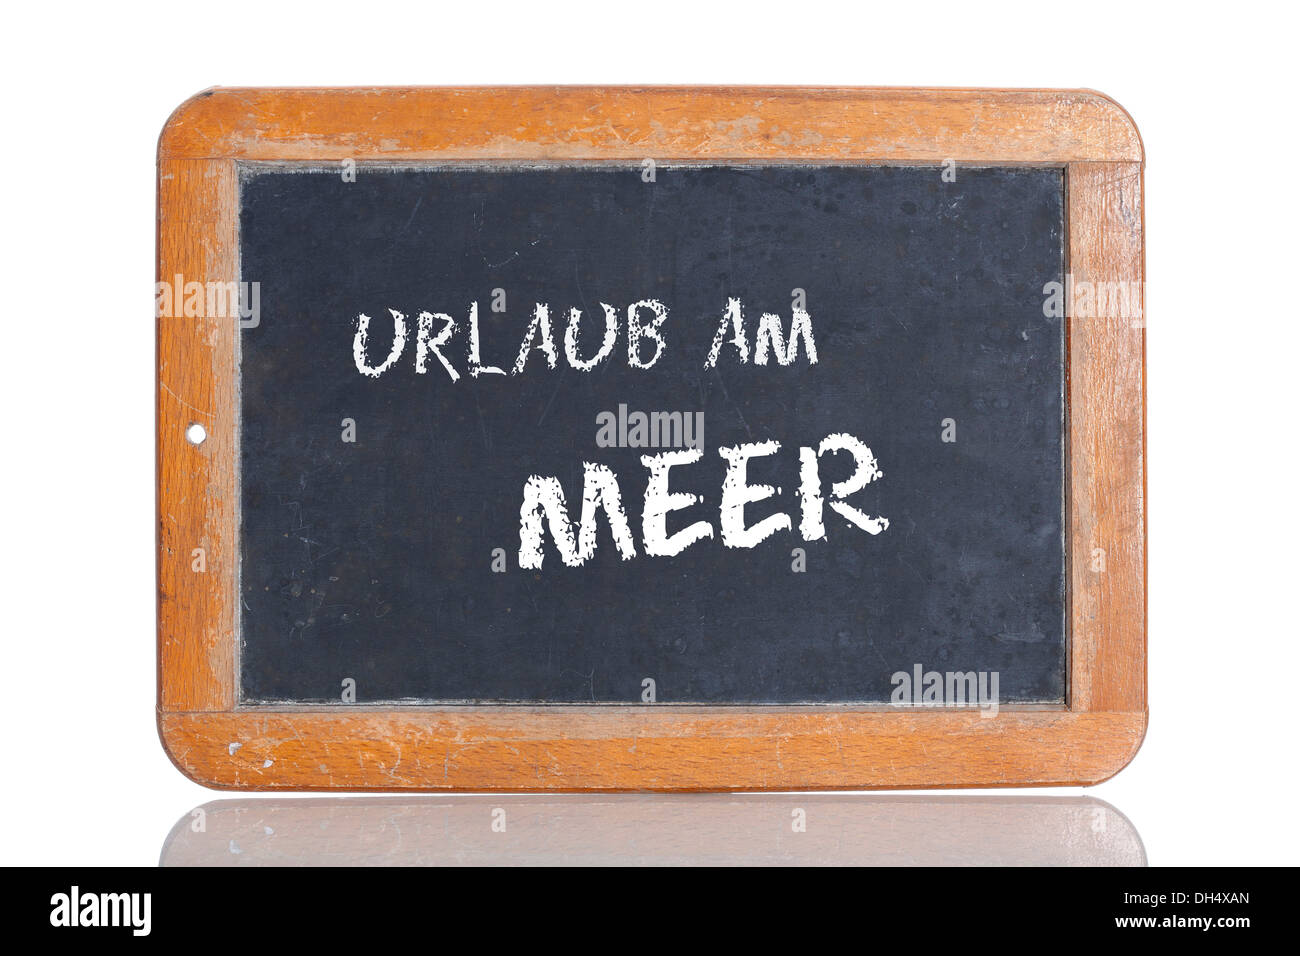 Vecchia lavagna, lettering "Urlaub am Meer', tedesco per "UNA VACANZA AL MARE" Foto Stock